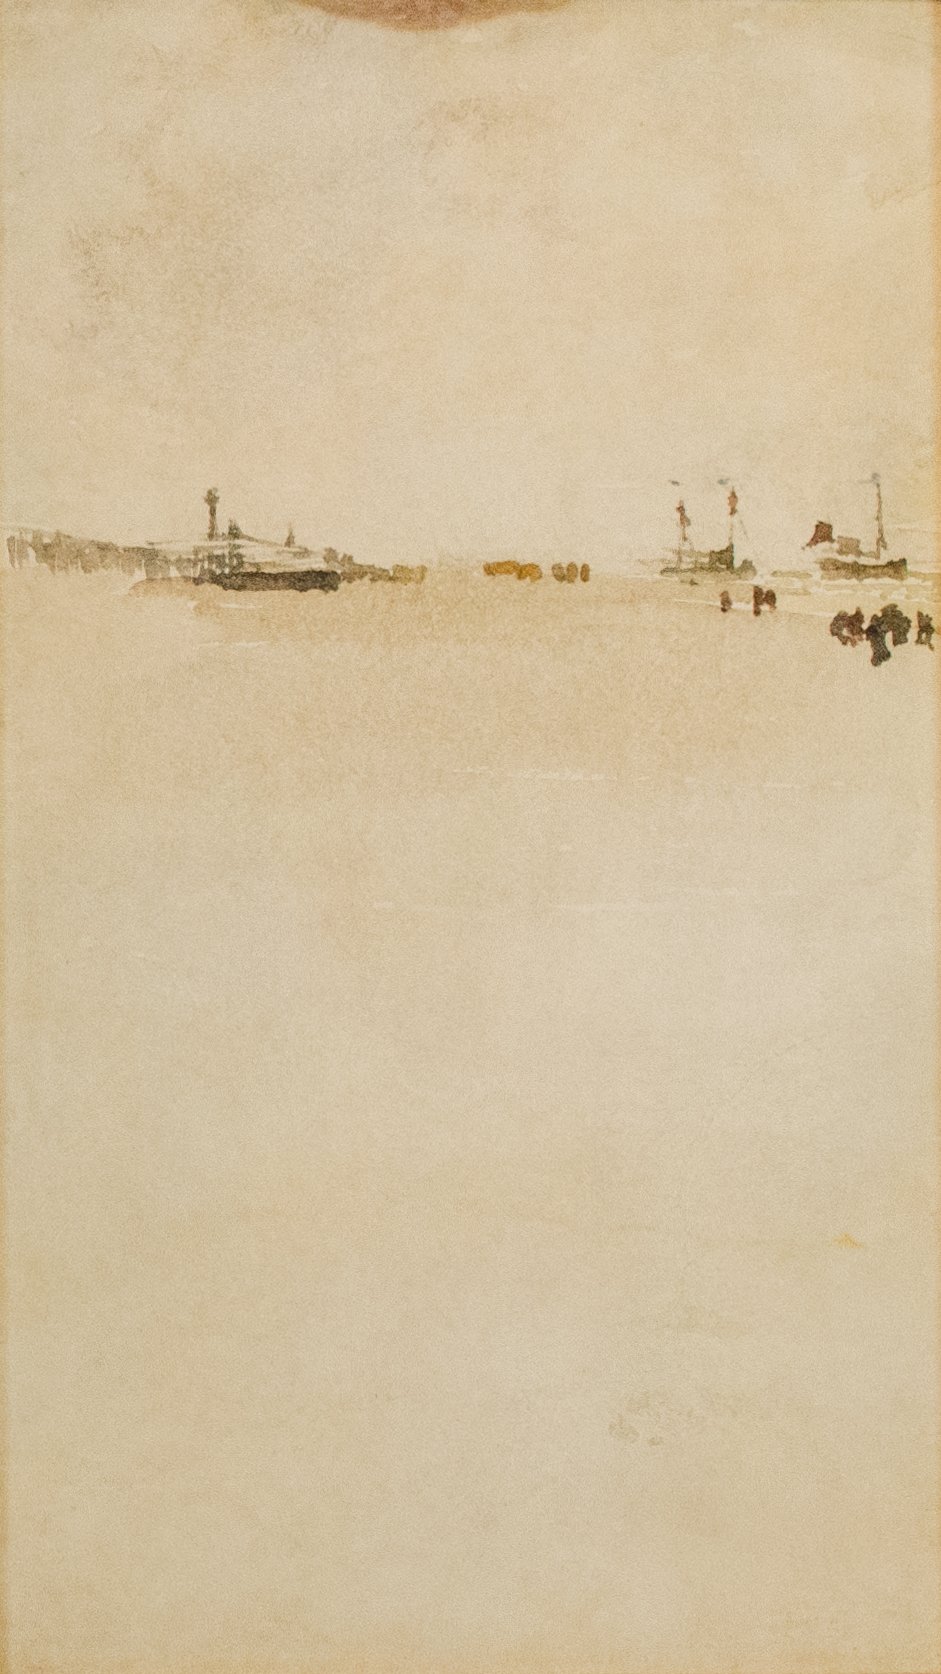 James Abbott McNeill Whistler, Beach Scene at Dieppe, 1885-86 